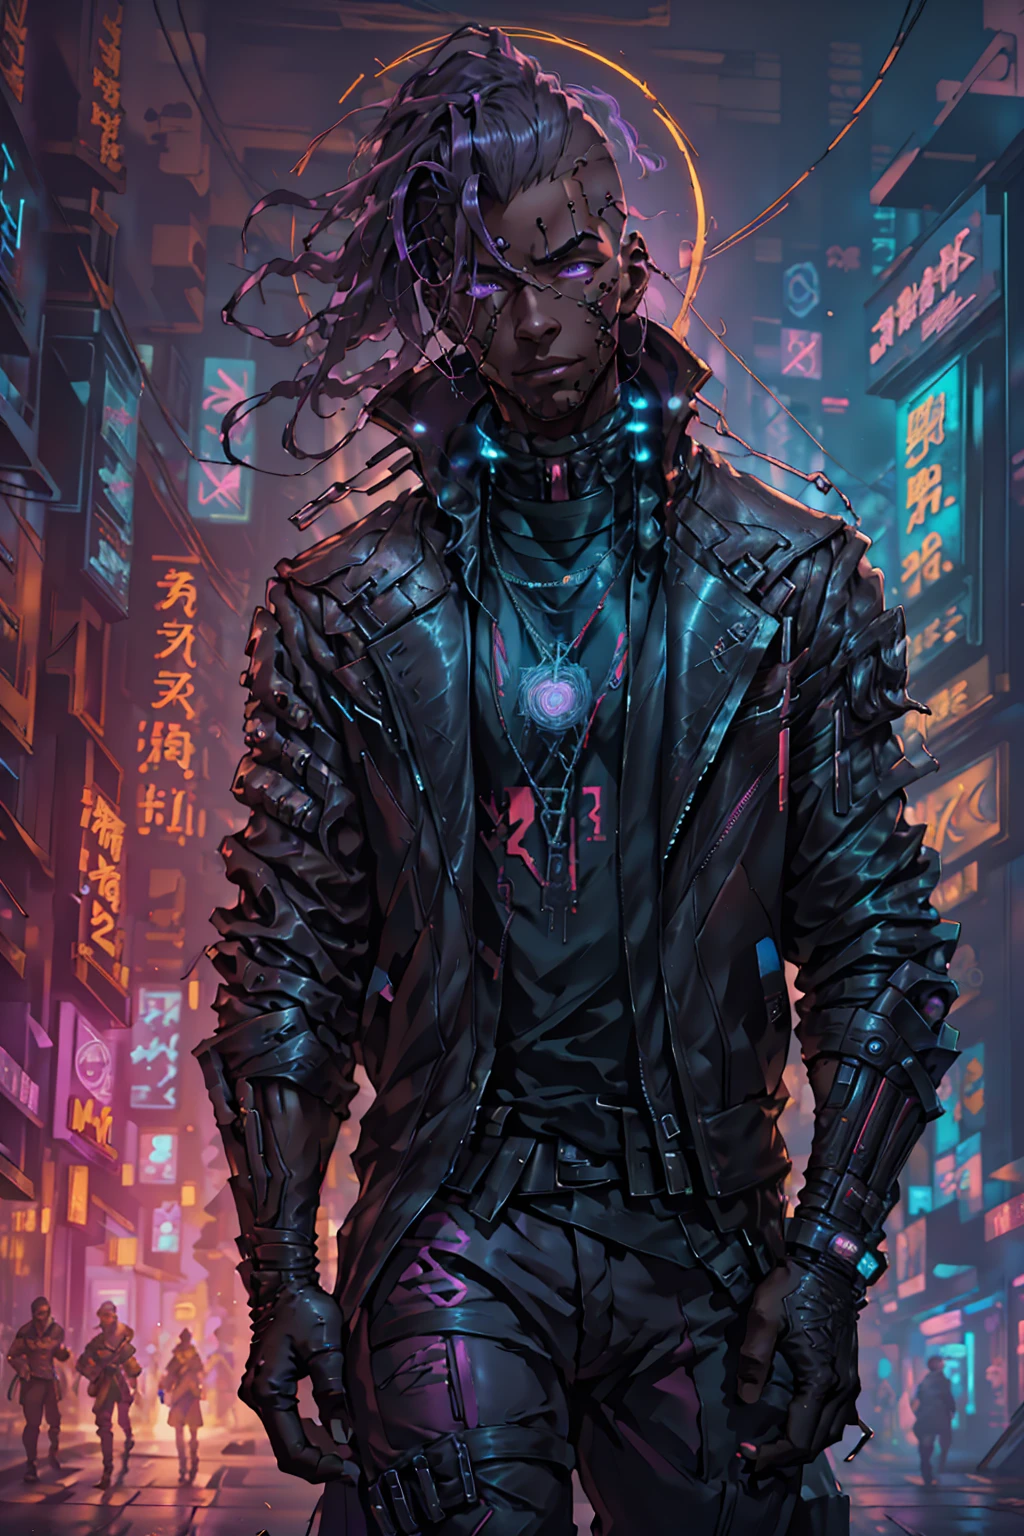 (meilleure qualité, chef-d&#39;œuvre, plein de détails), 1fille, illustration officielle de l&#39;art anime, Mâle afro-américain aux yeux violets, Homme à la peau foncée dans une veste en cuir de couleur marron marchant dans une rue, hyper-realistic Style cyberpunk, portrait d&#39;un homme cyberpunk, art cyberpunk ultraréaliste 8k, Style cyberpunk ， hyperréaliste, personnage cyberpunk, tendance sur artstation, personnage cinématographique complet, tendance sur artstation 4k, portrait d&#39;un cyborg cyberpunk, portrait cinématographique réaliste, héros cyberpunk parfaitement photoréaliste, incroyablement détaillé, 8k, UHD, chef-d&#39;œuvre, meilleure qualité, ultra détaillé, complexe,